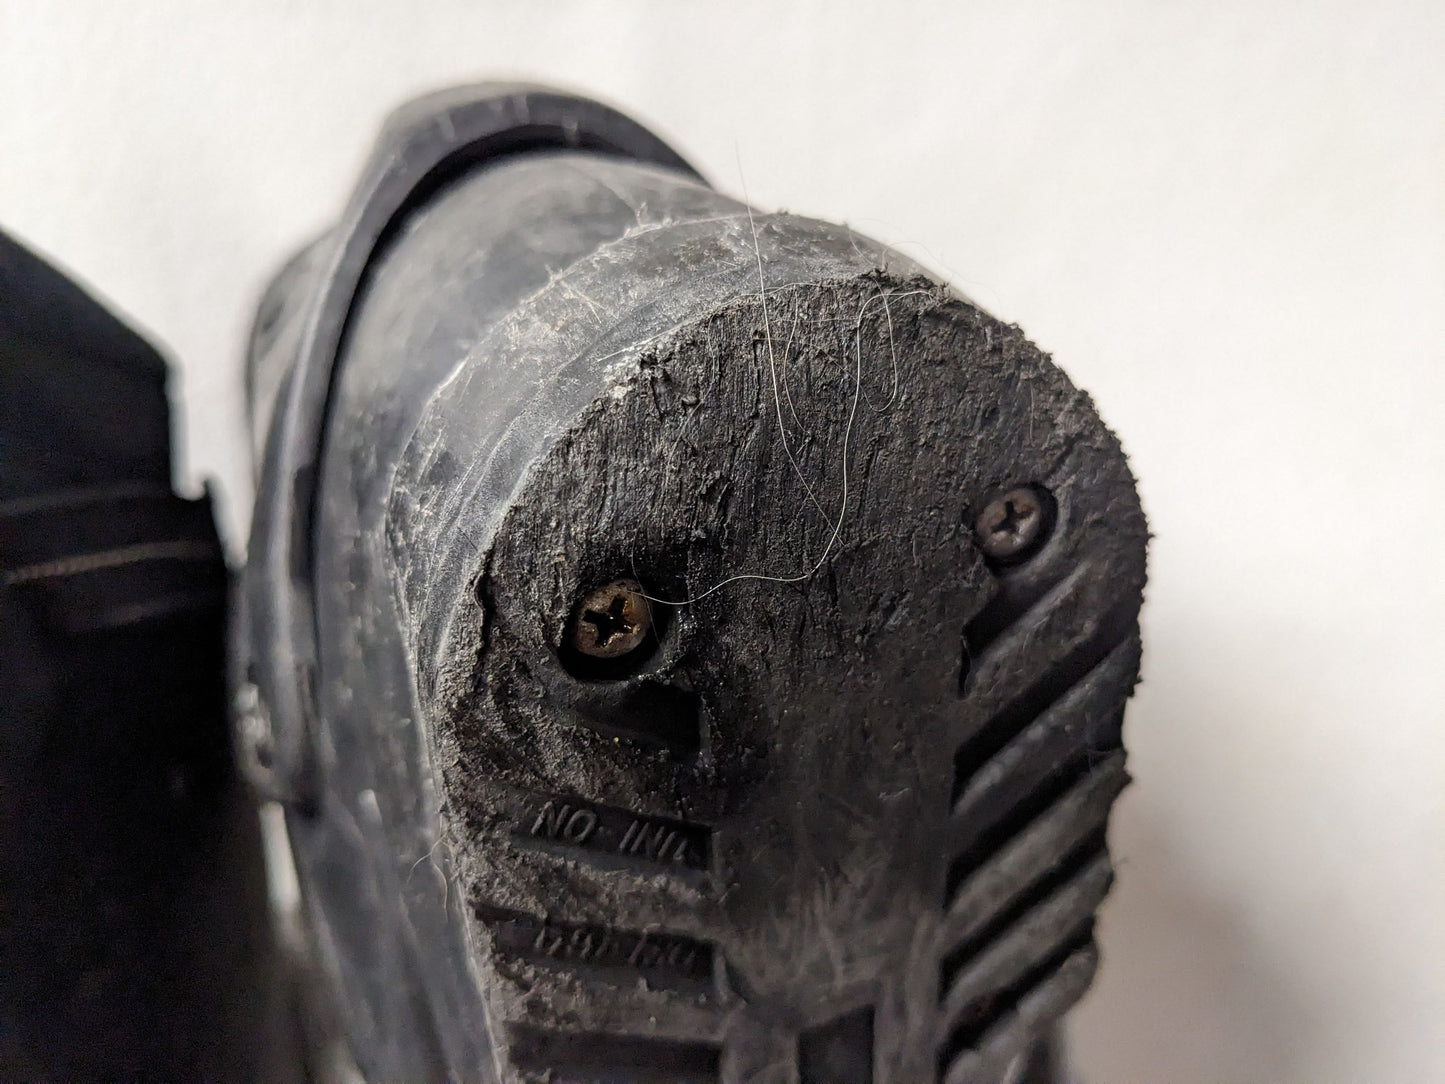 Nordica F5.7 Ski Boots Size 28.5 Color Gray Condition Used